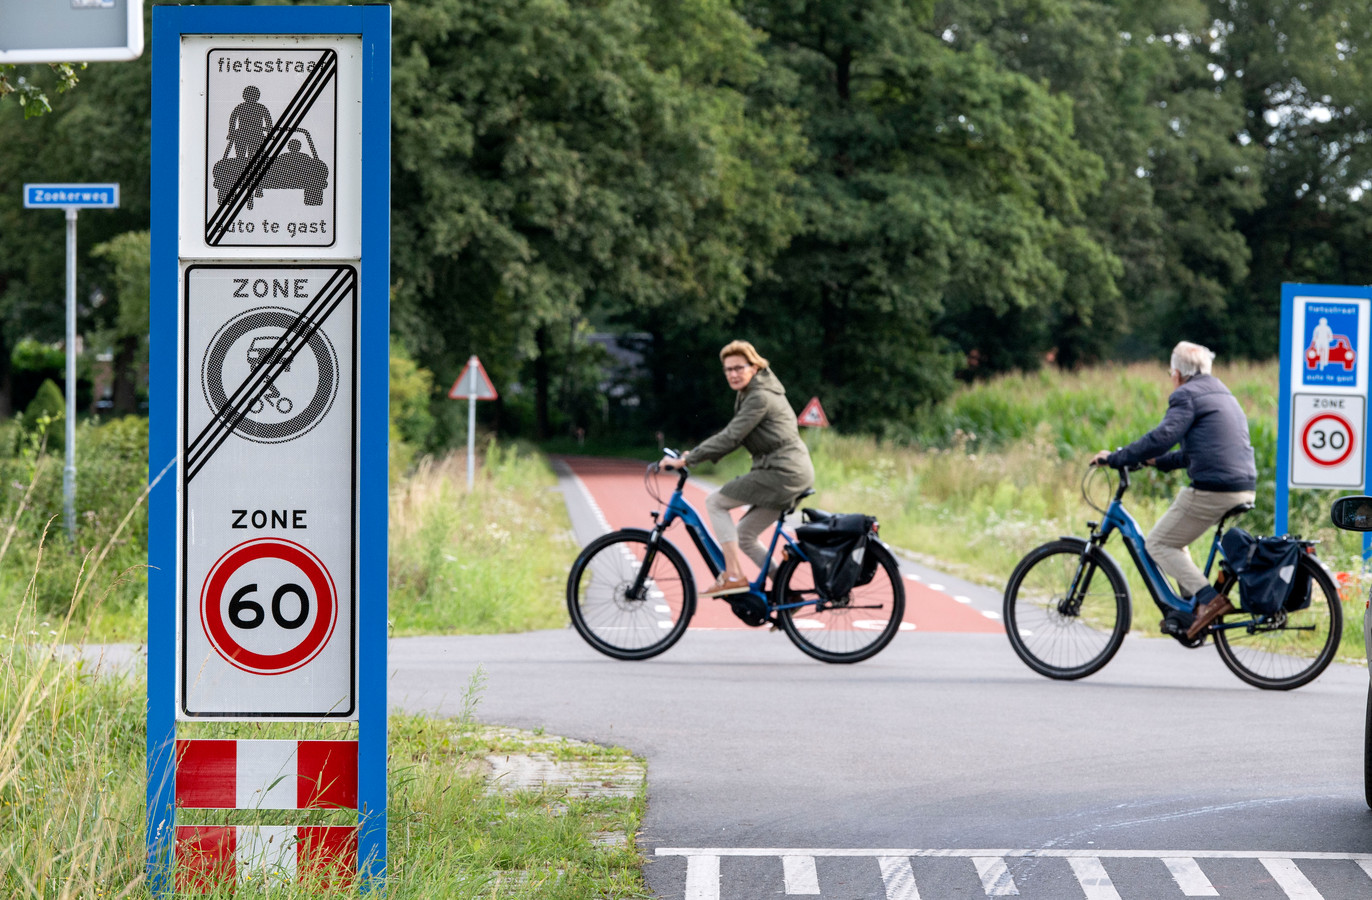 Een kruising op de Hogeboekelweg. De snelheid van 60 geldt op het kruispunt, 30 is de maximale snelheid op de fietsstraat zelf.